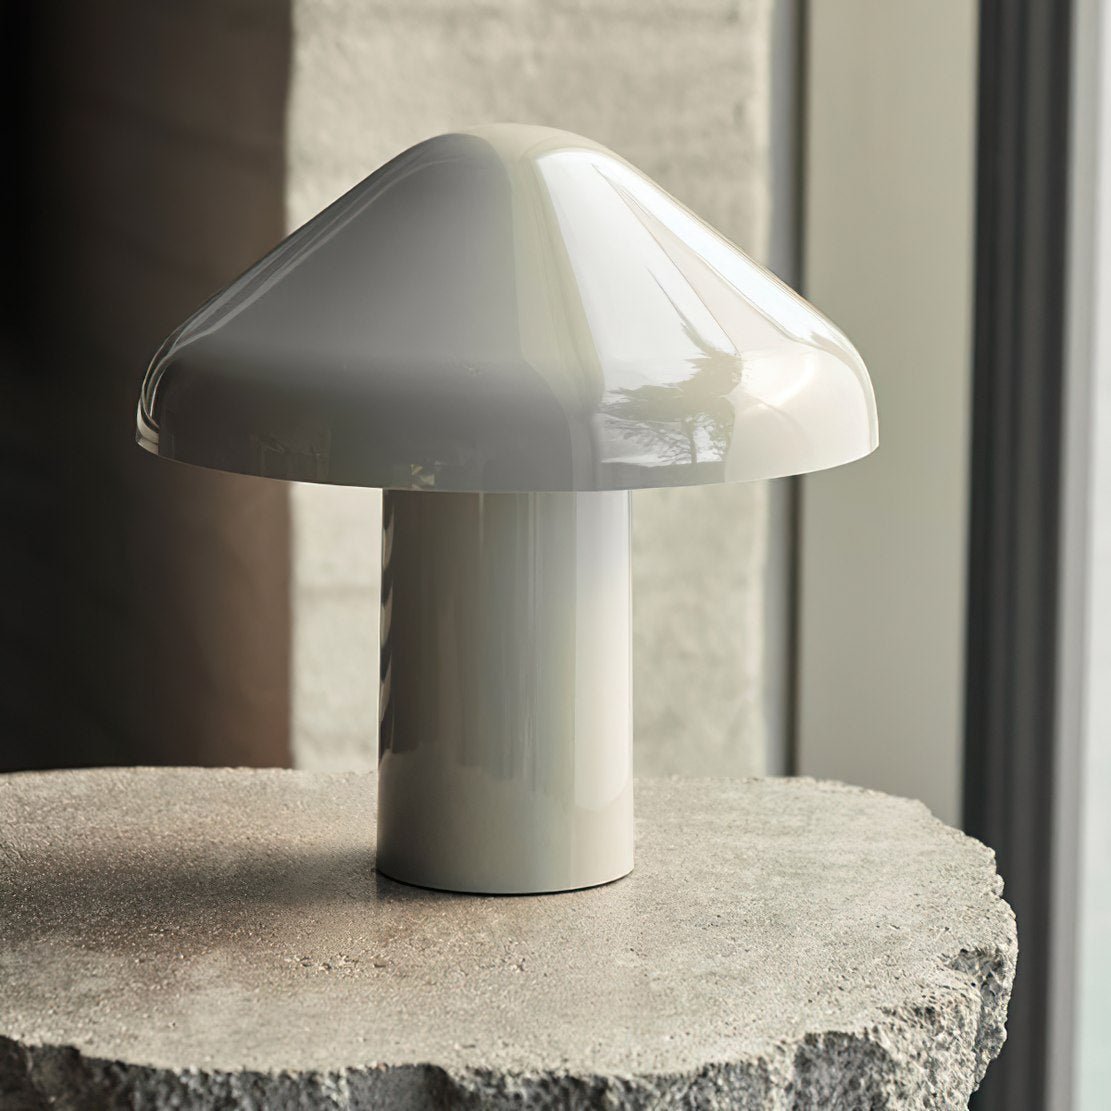 White, metal USB plus mushroom nightlight lamp